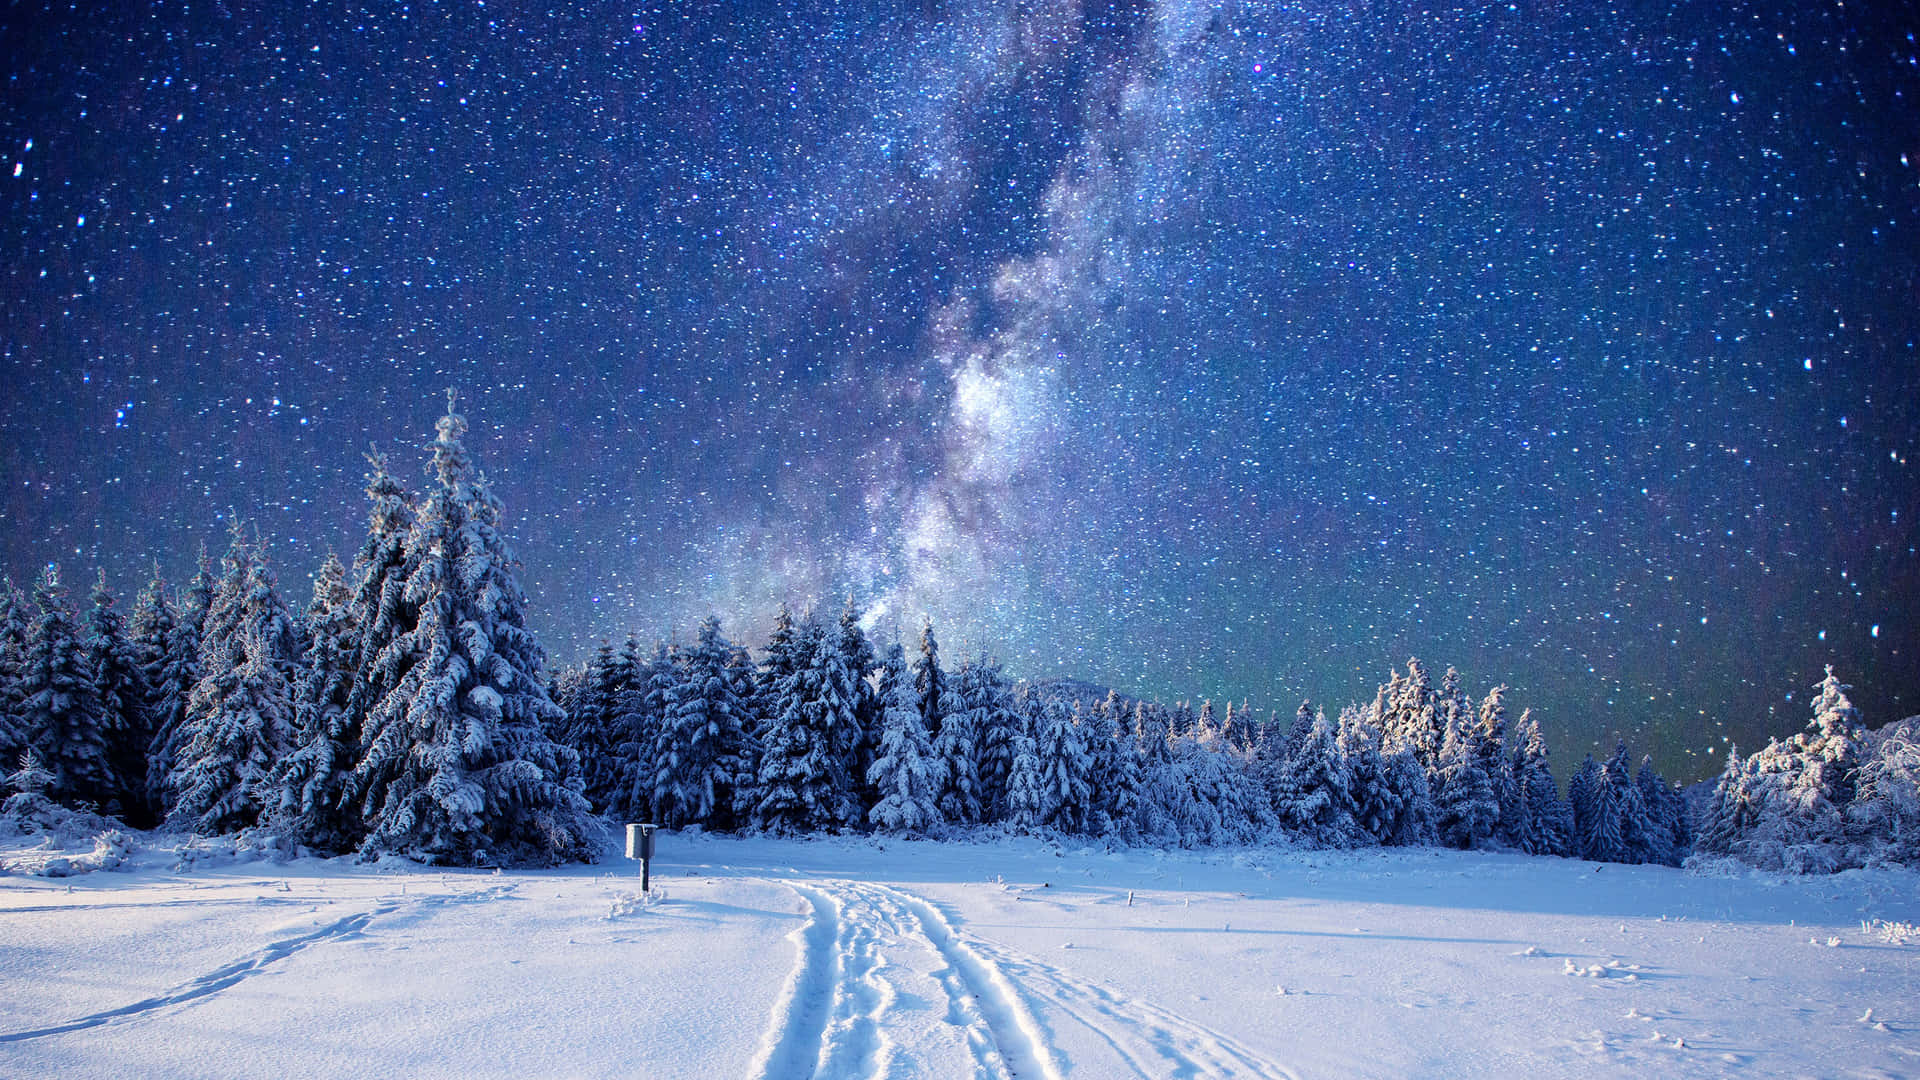 "A Stunning Winter Wonderland" Wallpaper